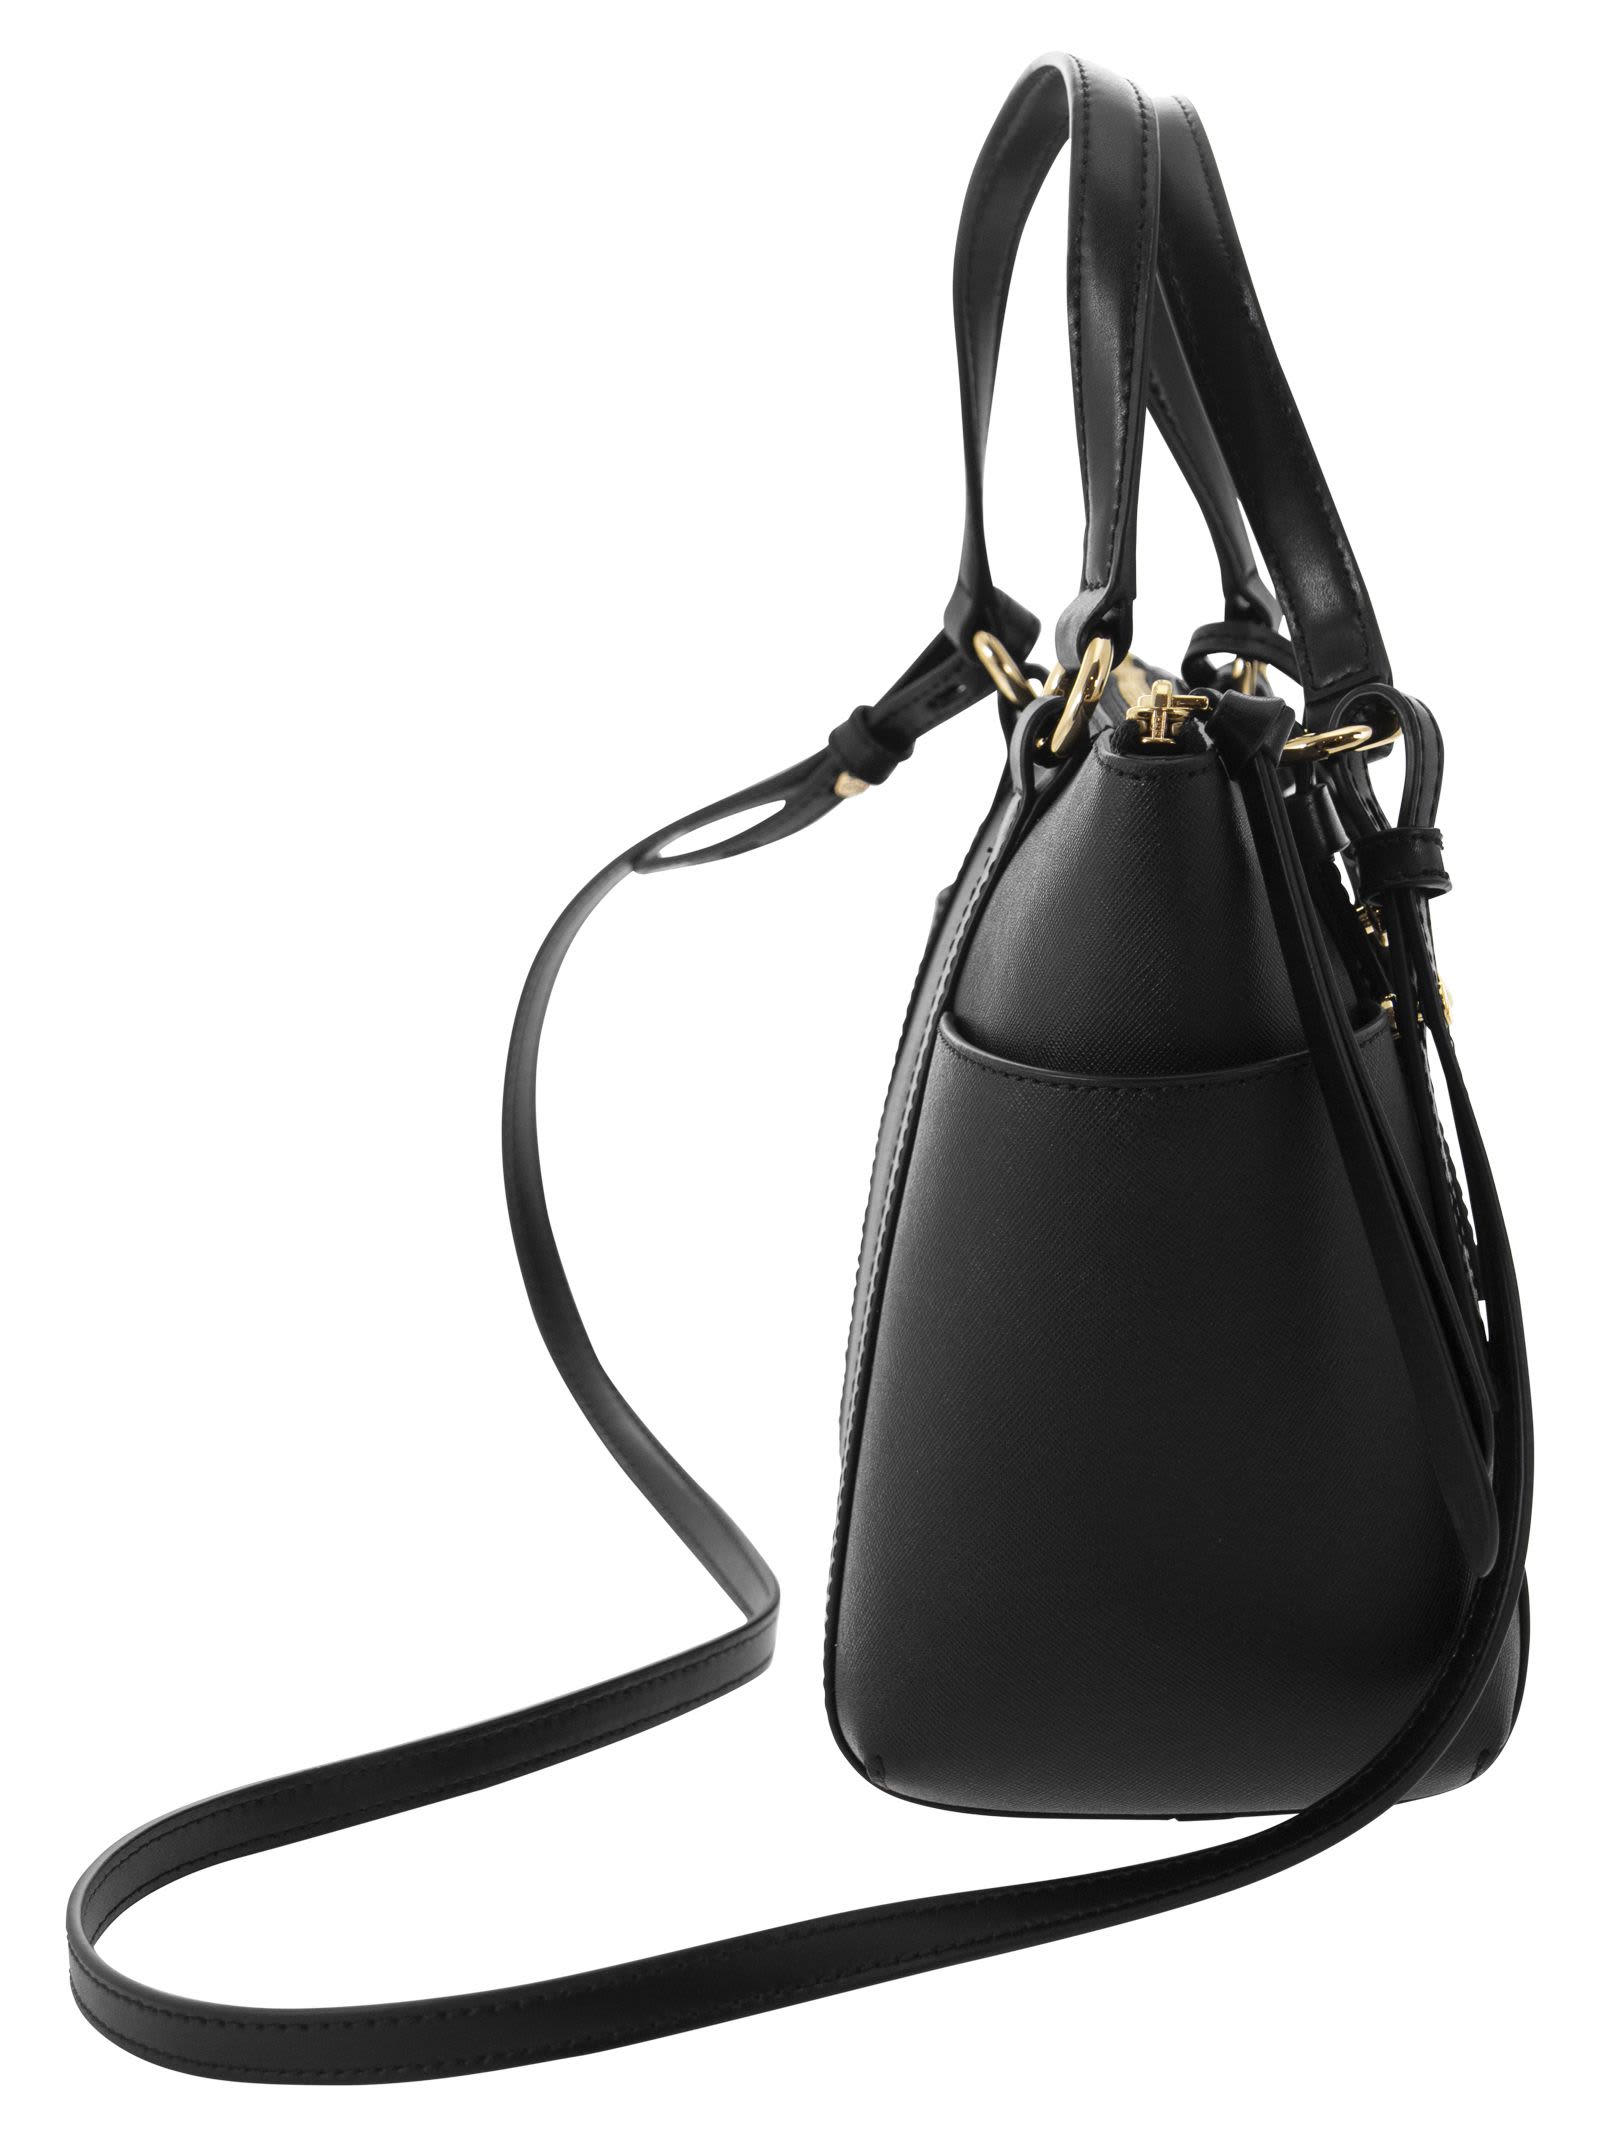 Sullivan Small Saffiano Leather Tote Bag